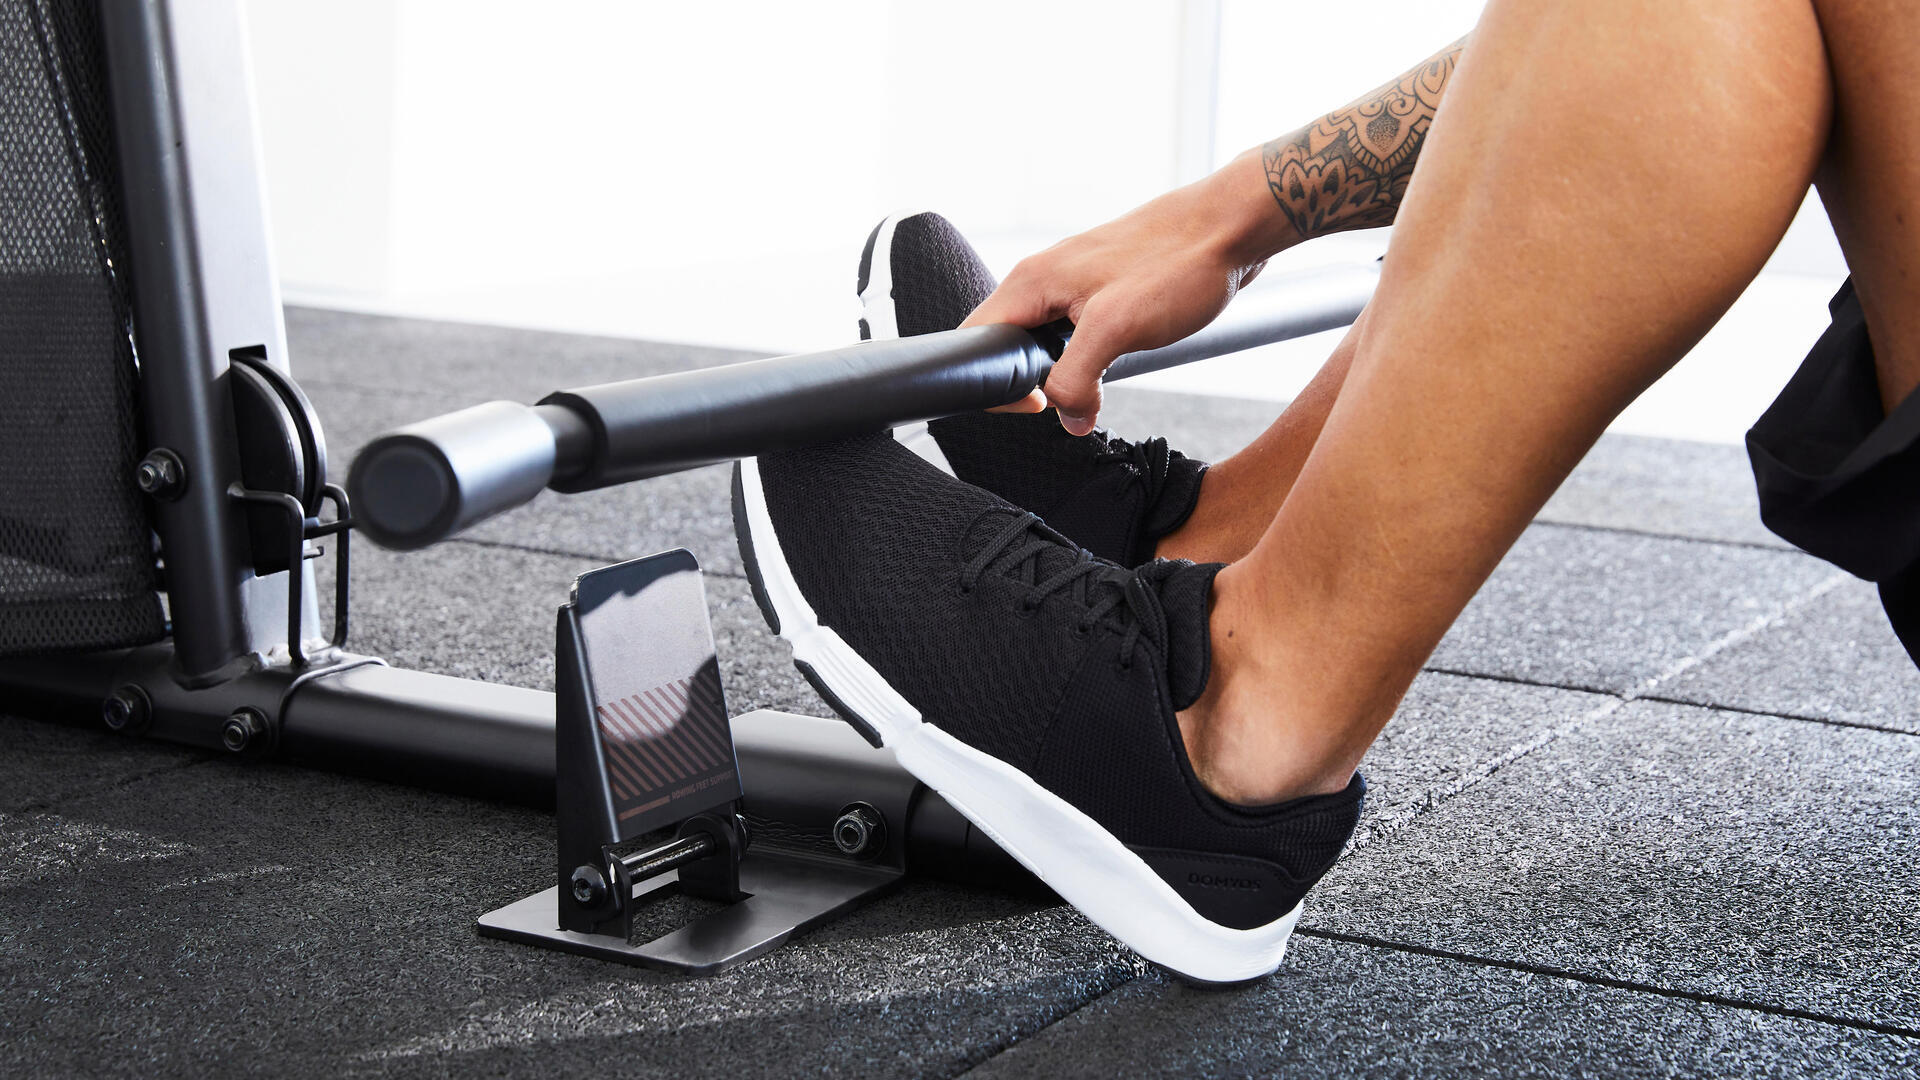 Quels exercices faire avec un appareil de musculation Home Gym ?